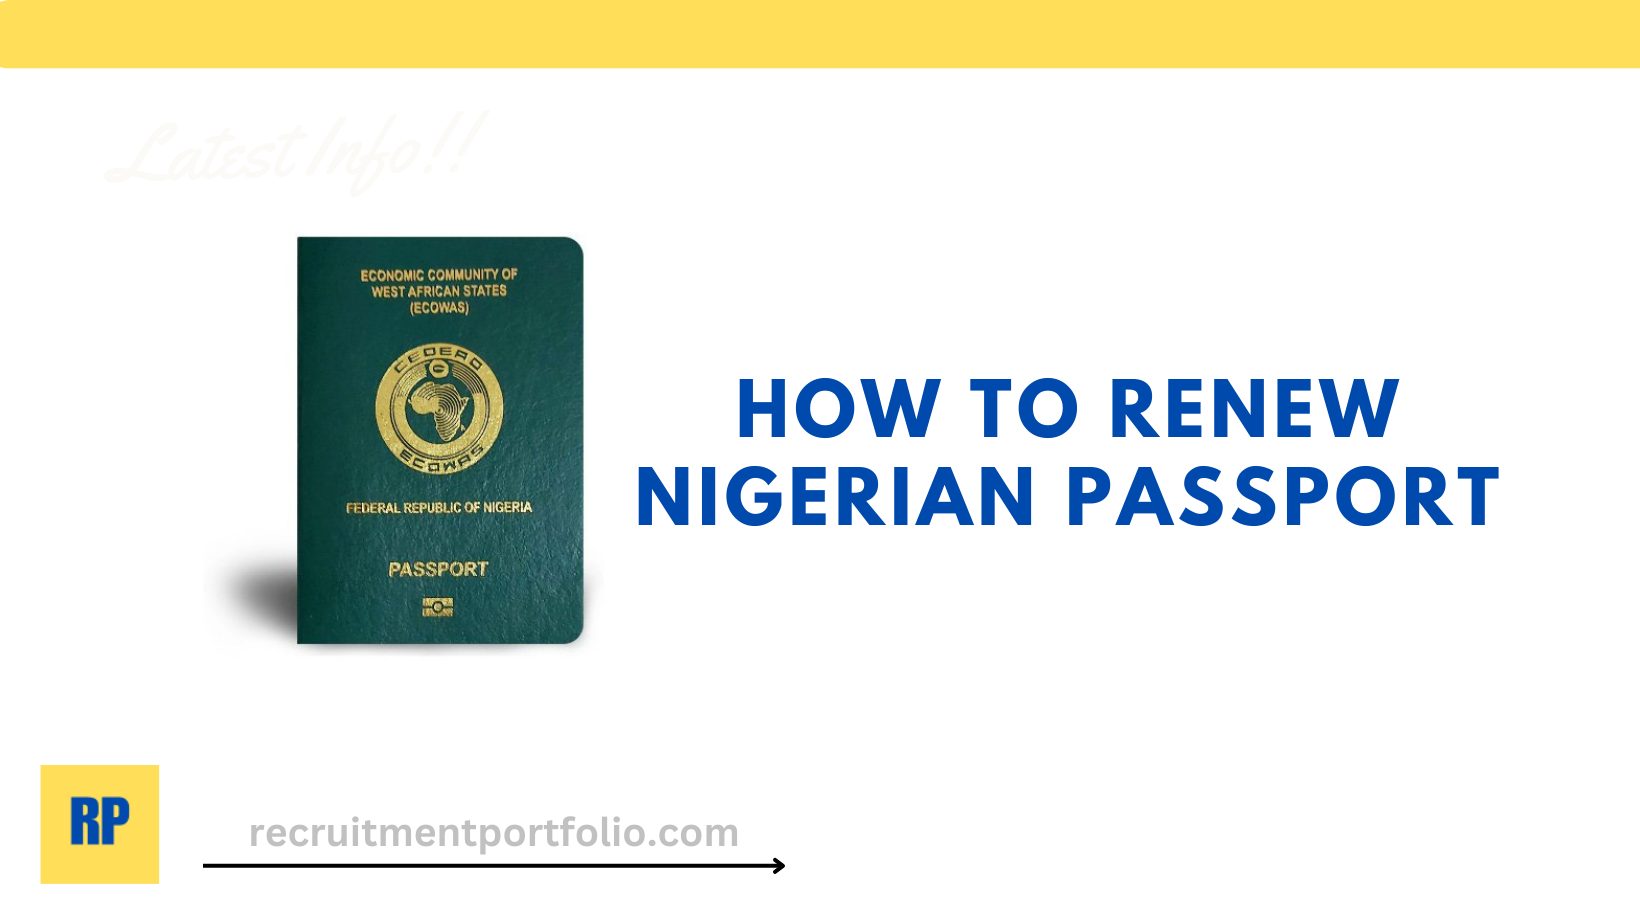 HOW to REnew Nigerian Passport